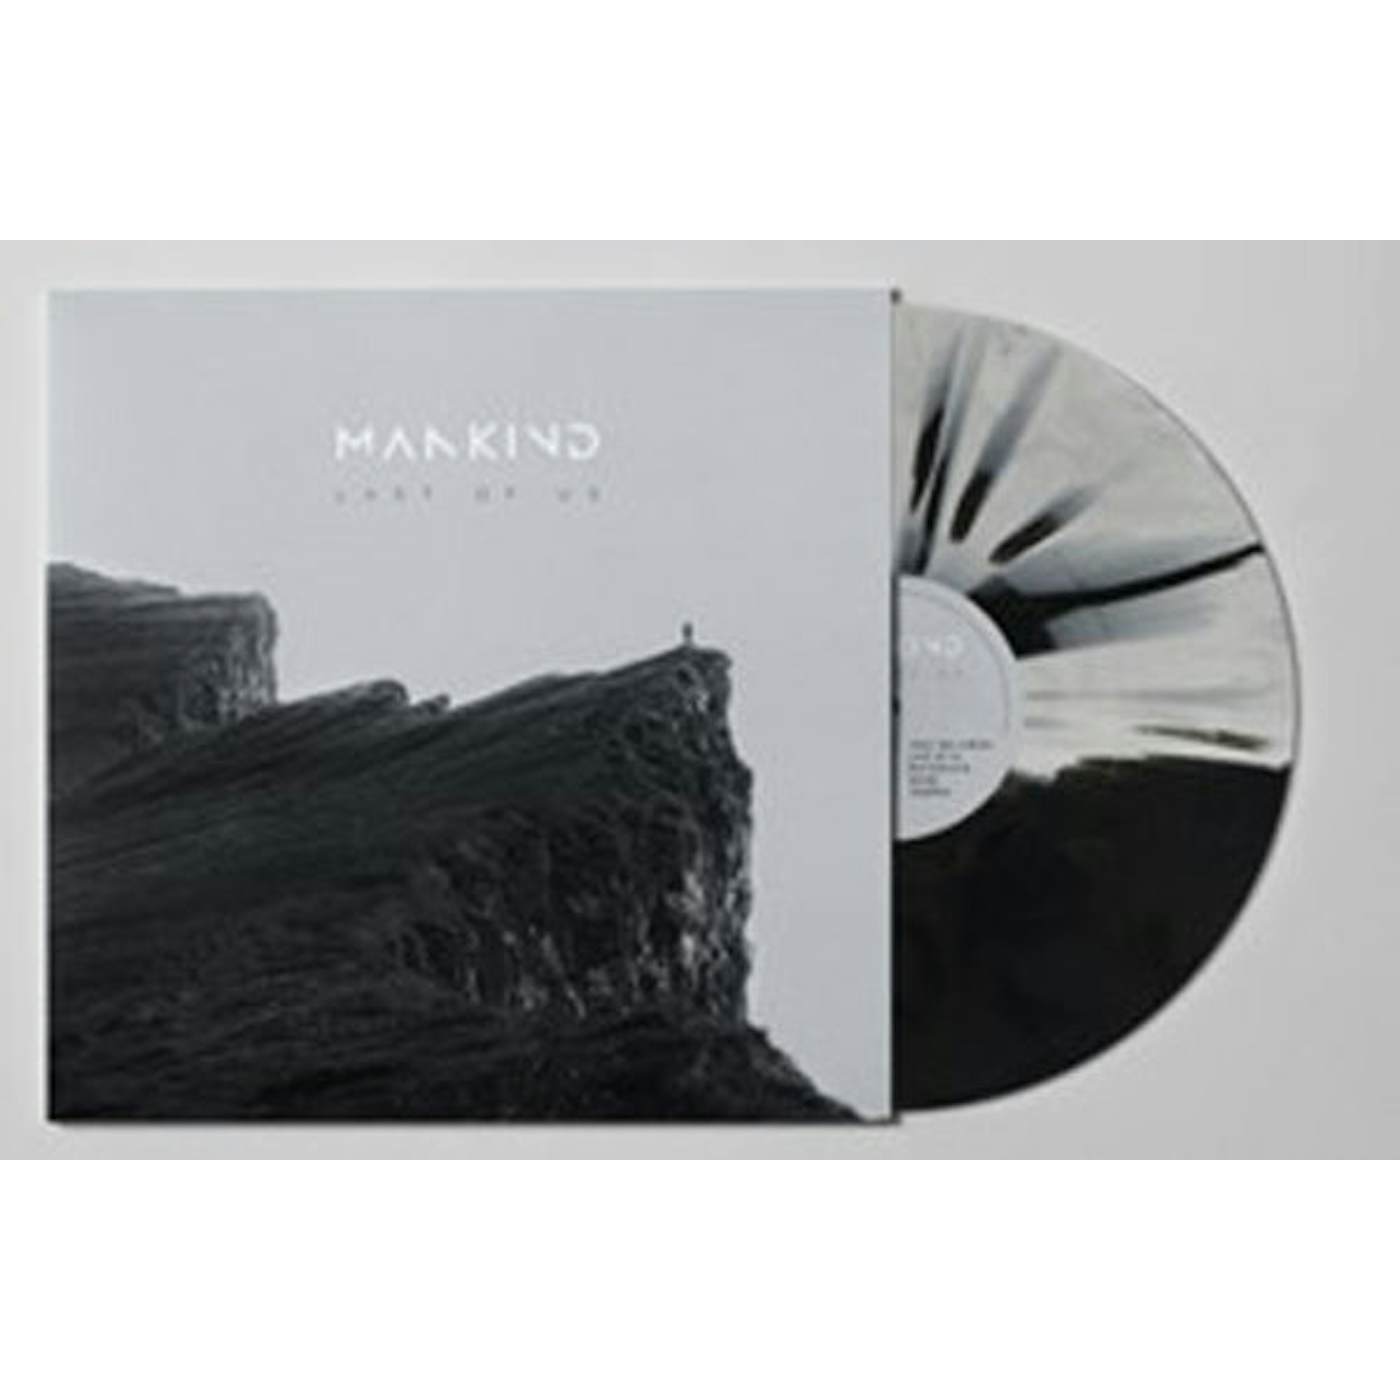  Mankind LP - Last Of Us (Black/White Splatter Vinyl)